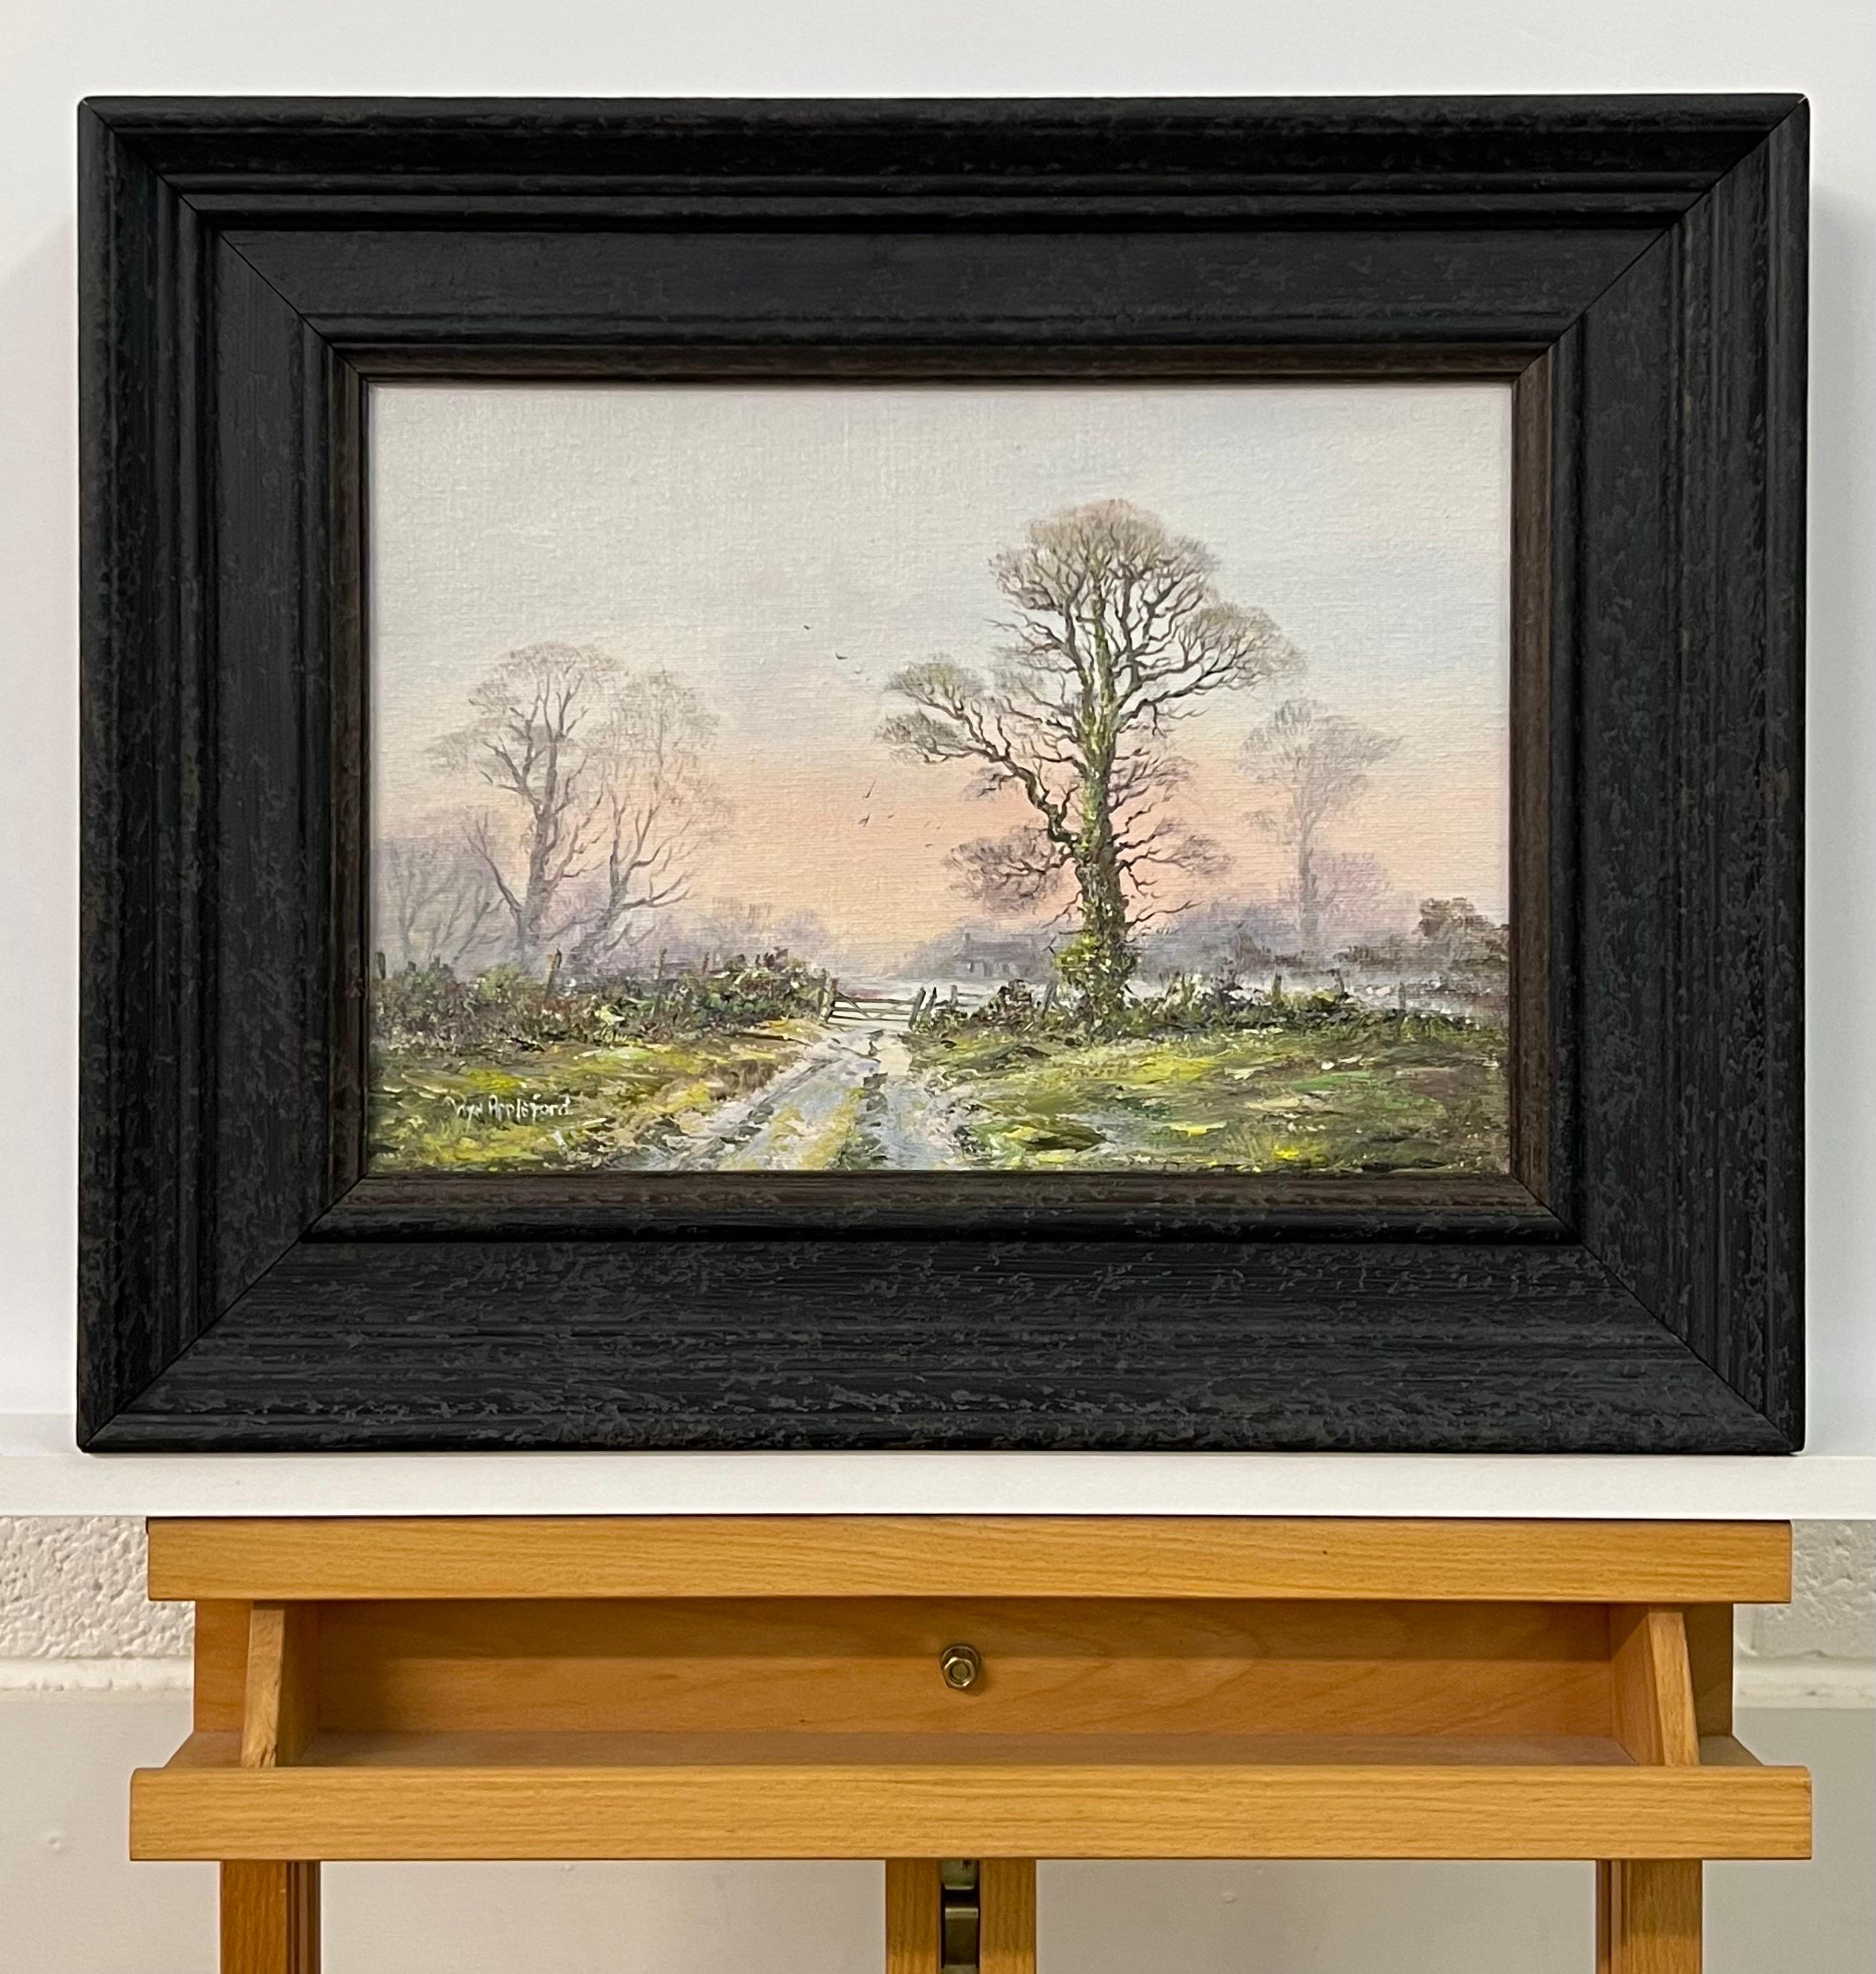 Tracks de ferme en paysage boisé rose et vert par un artiste britannique du 20e siècle - Réalisme Painting par Wyn Appleford